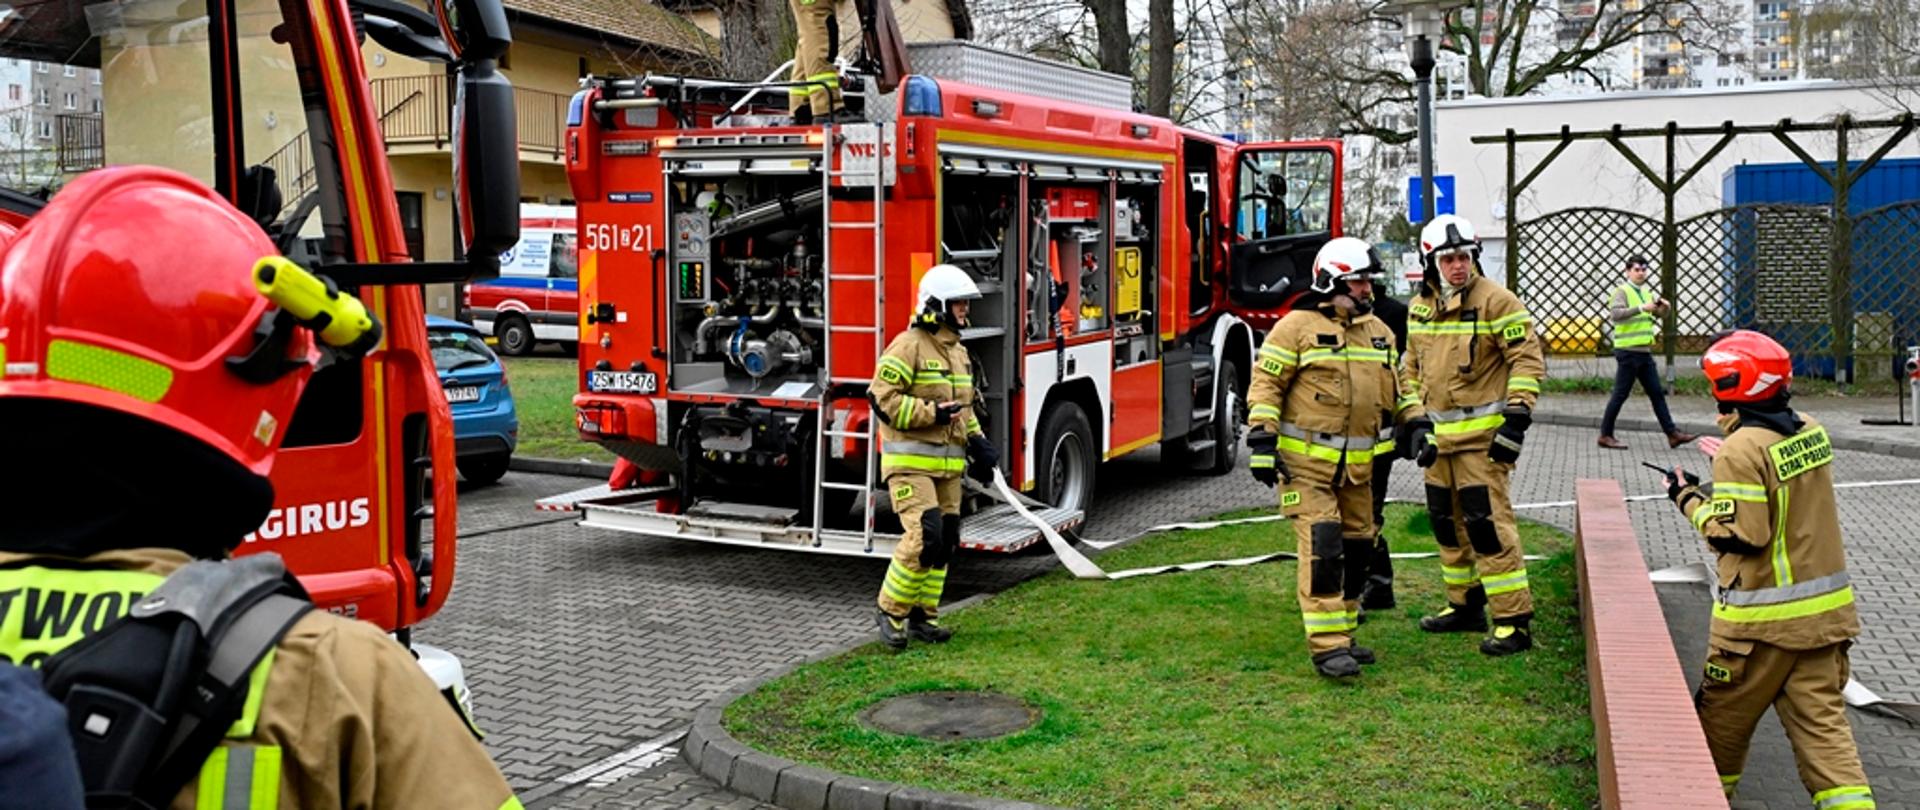 Zdjęcie przedstawia trzech strażaków. Strażacy w czerwonych hełmach, piaskowych oraz ciemnych mundurach. Strażacy wyciągają sprzęt ratowniczy z pojazdu pożarniczego. W tle samochód pożarniczy koloru czerwonego.